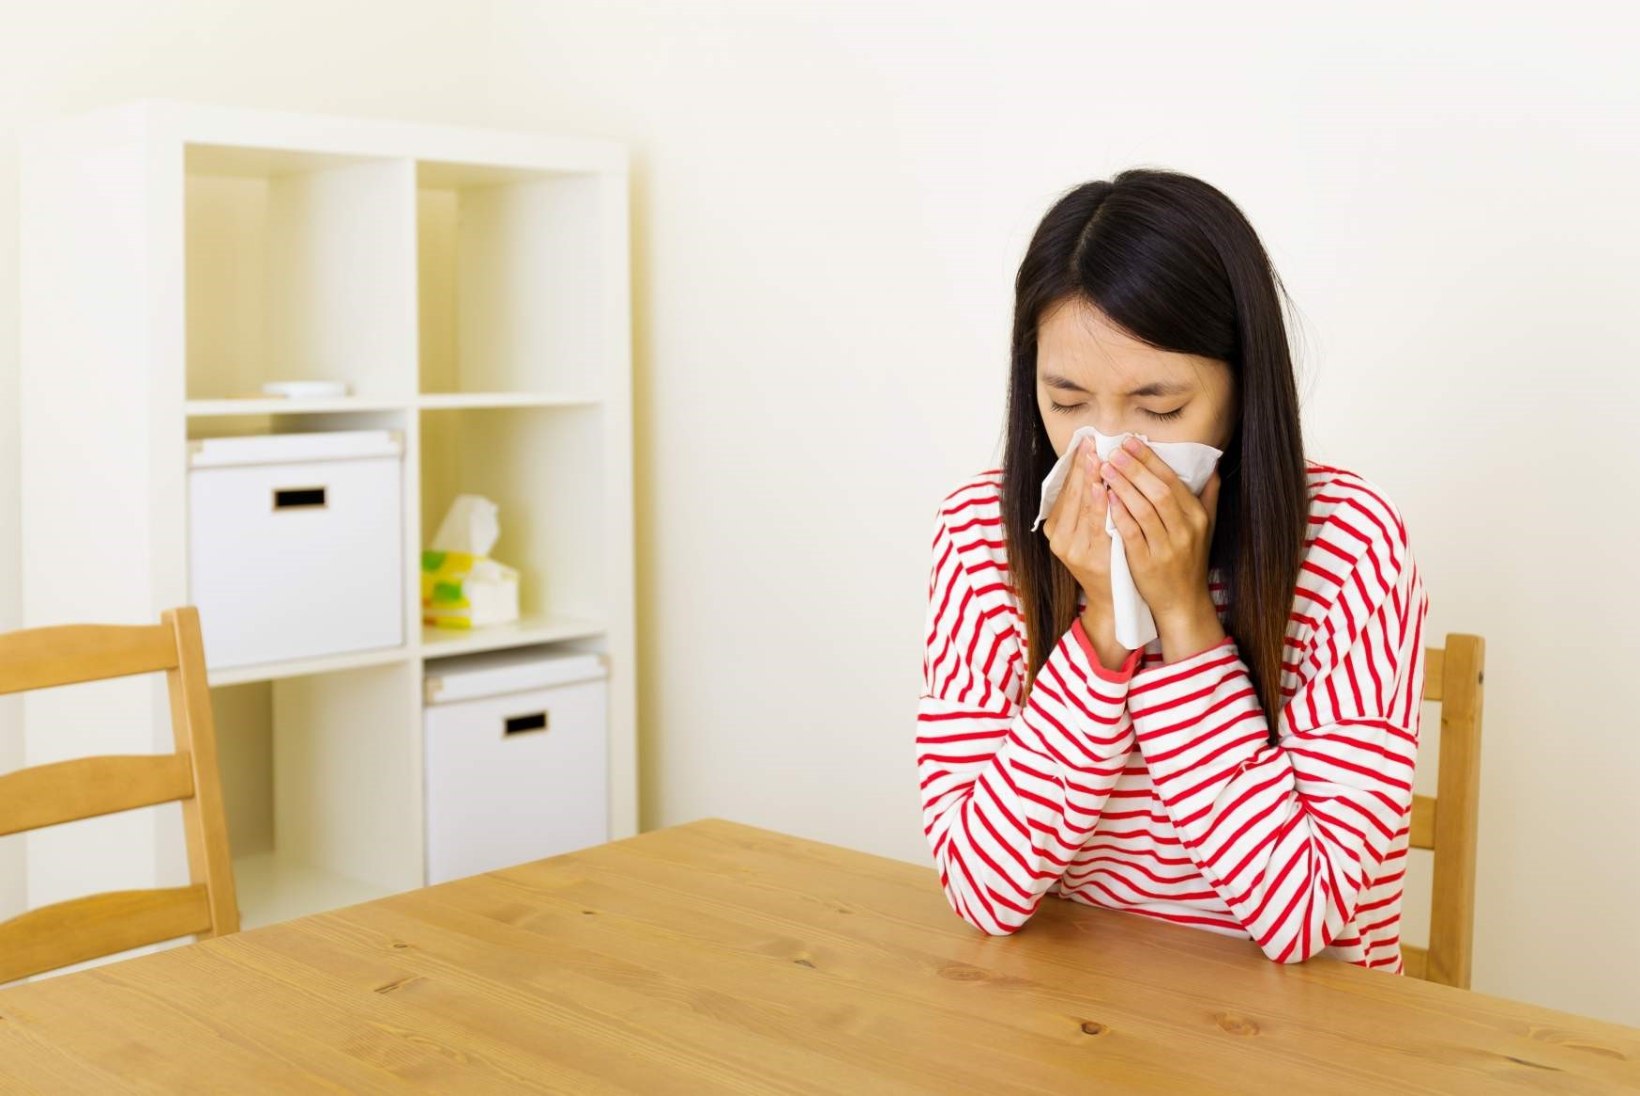 Milline peaks olema allergiku kodu?